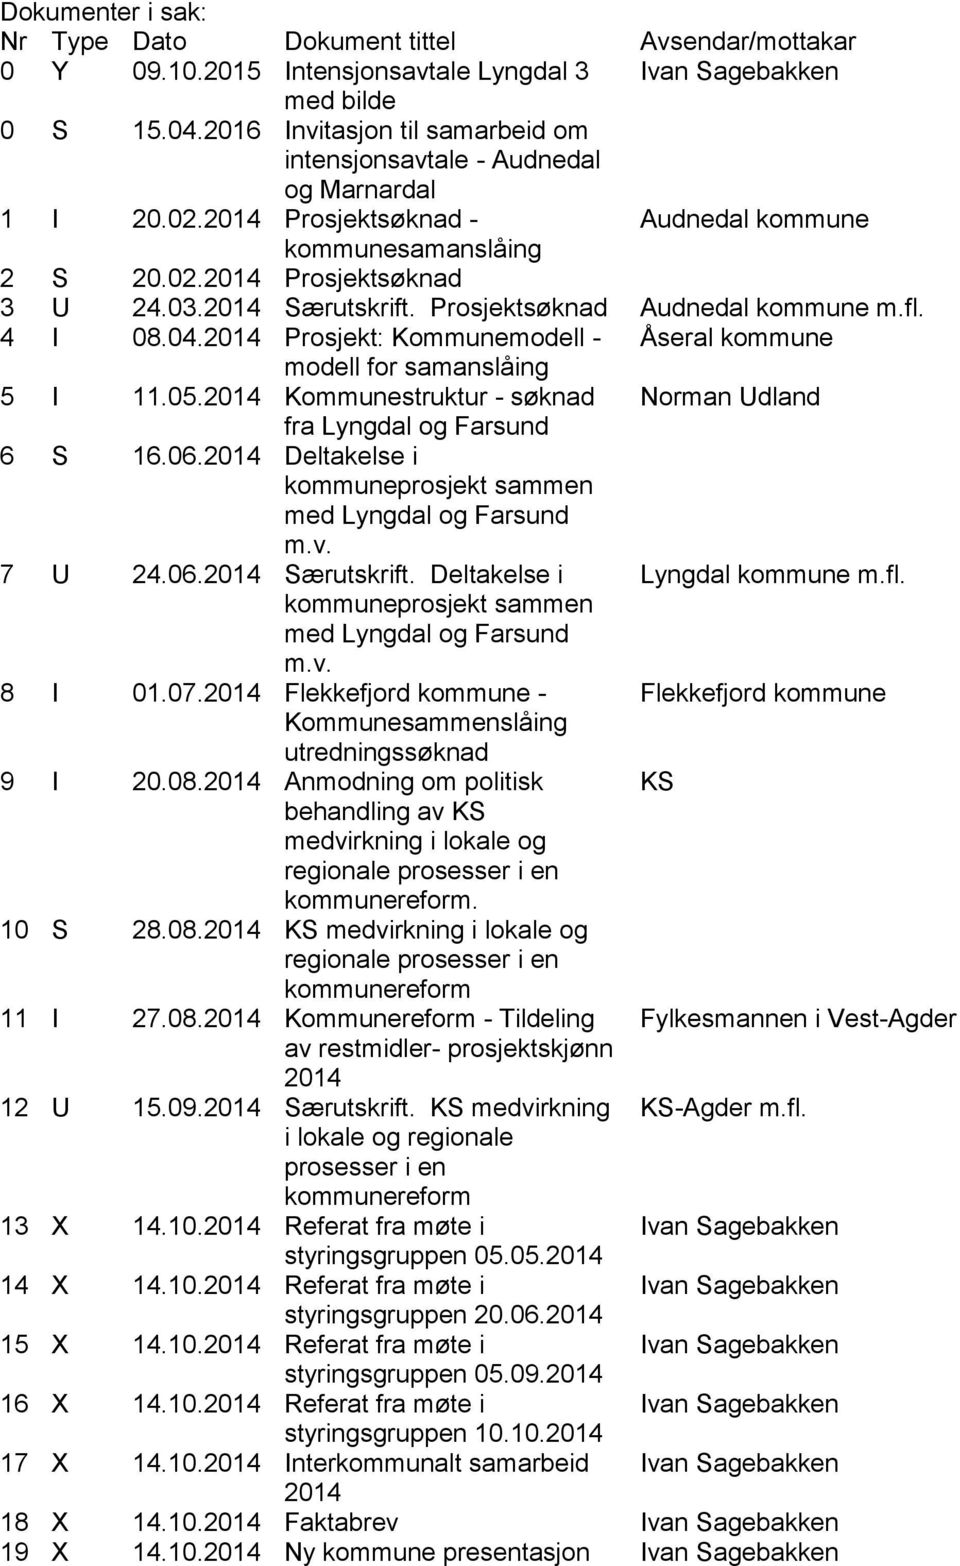 fl. 4 I 08.04.2014 Prosjekt: Kommunemodell - Åseral kommune modell for samanslåing 5 I 11.05.2014 Kommunestruktur - søknad Norman Udland fra Lyngdal og Farsund 6 S 16.06.